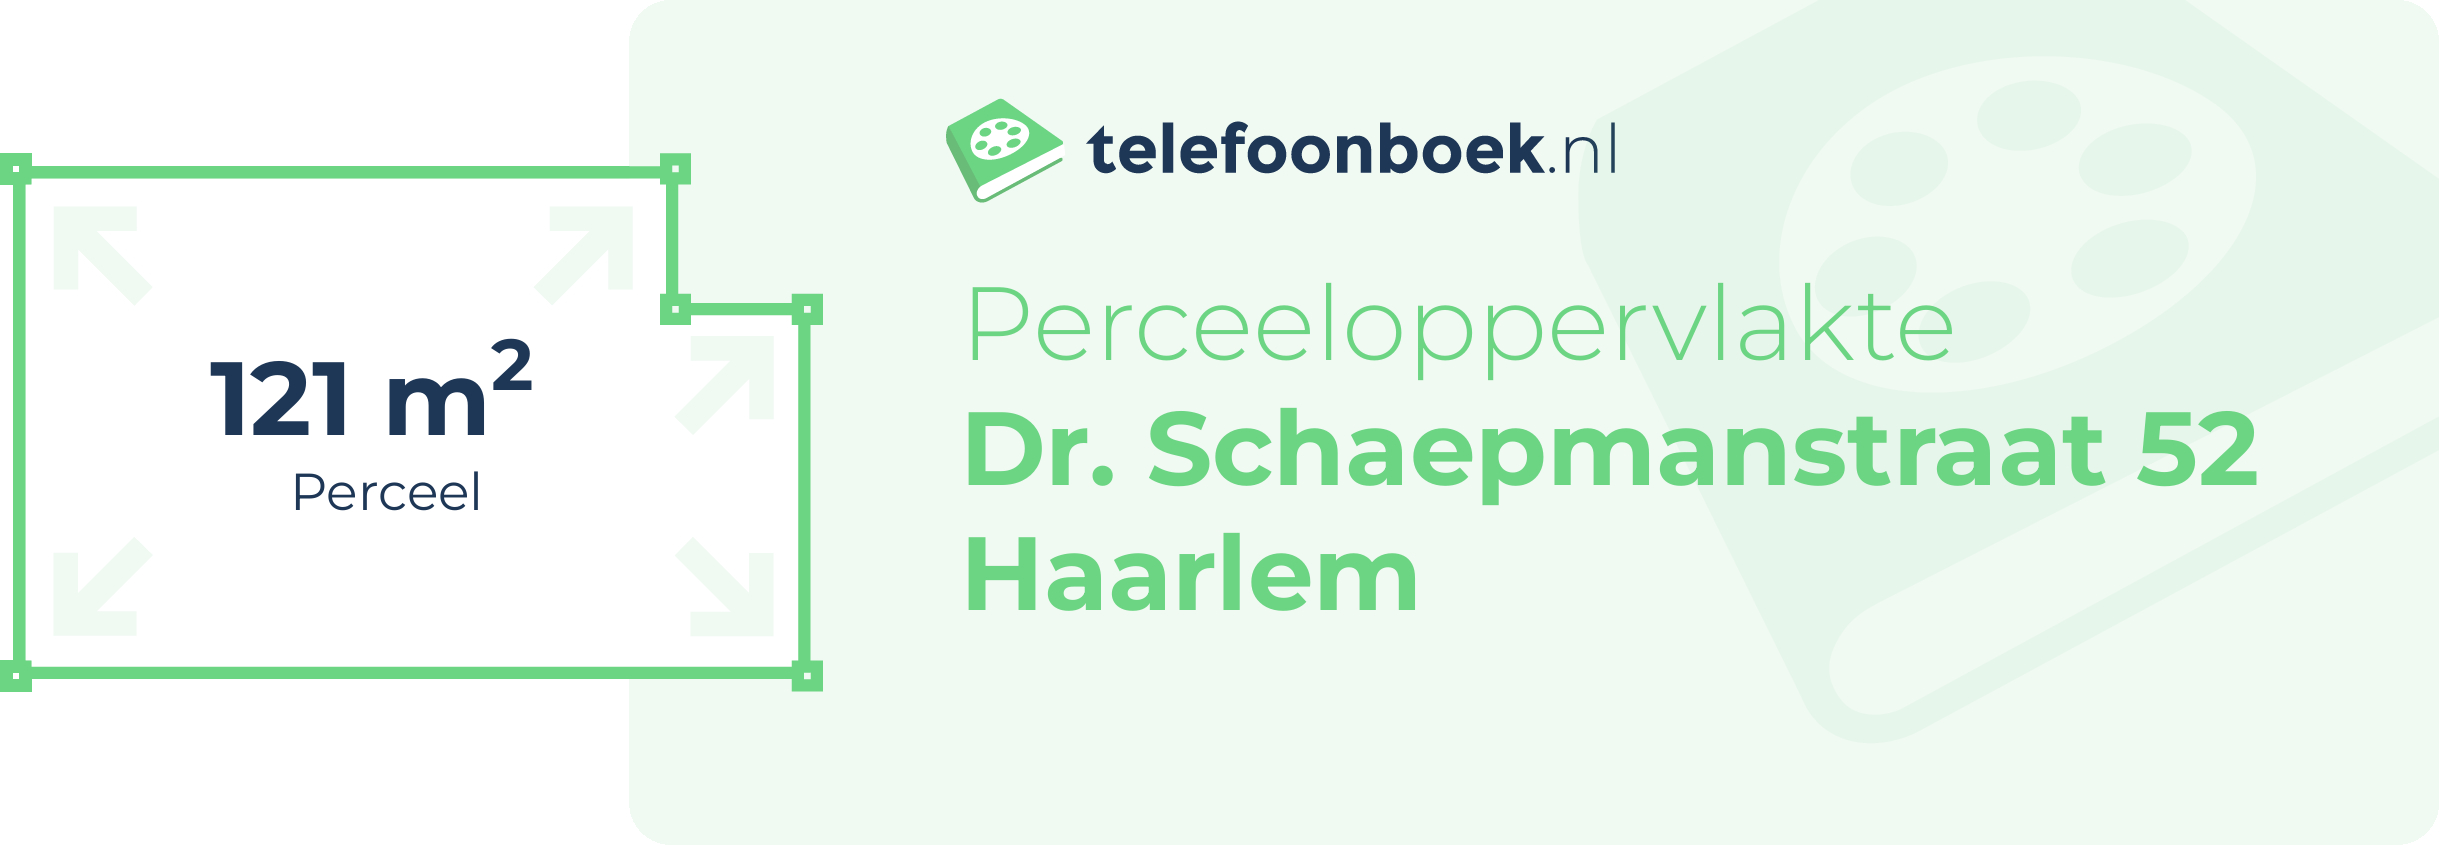 Perceeloppervlakte Dr. Schaepmanstraat 52 Haarlem